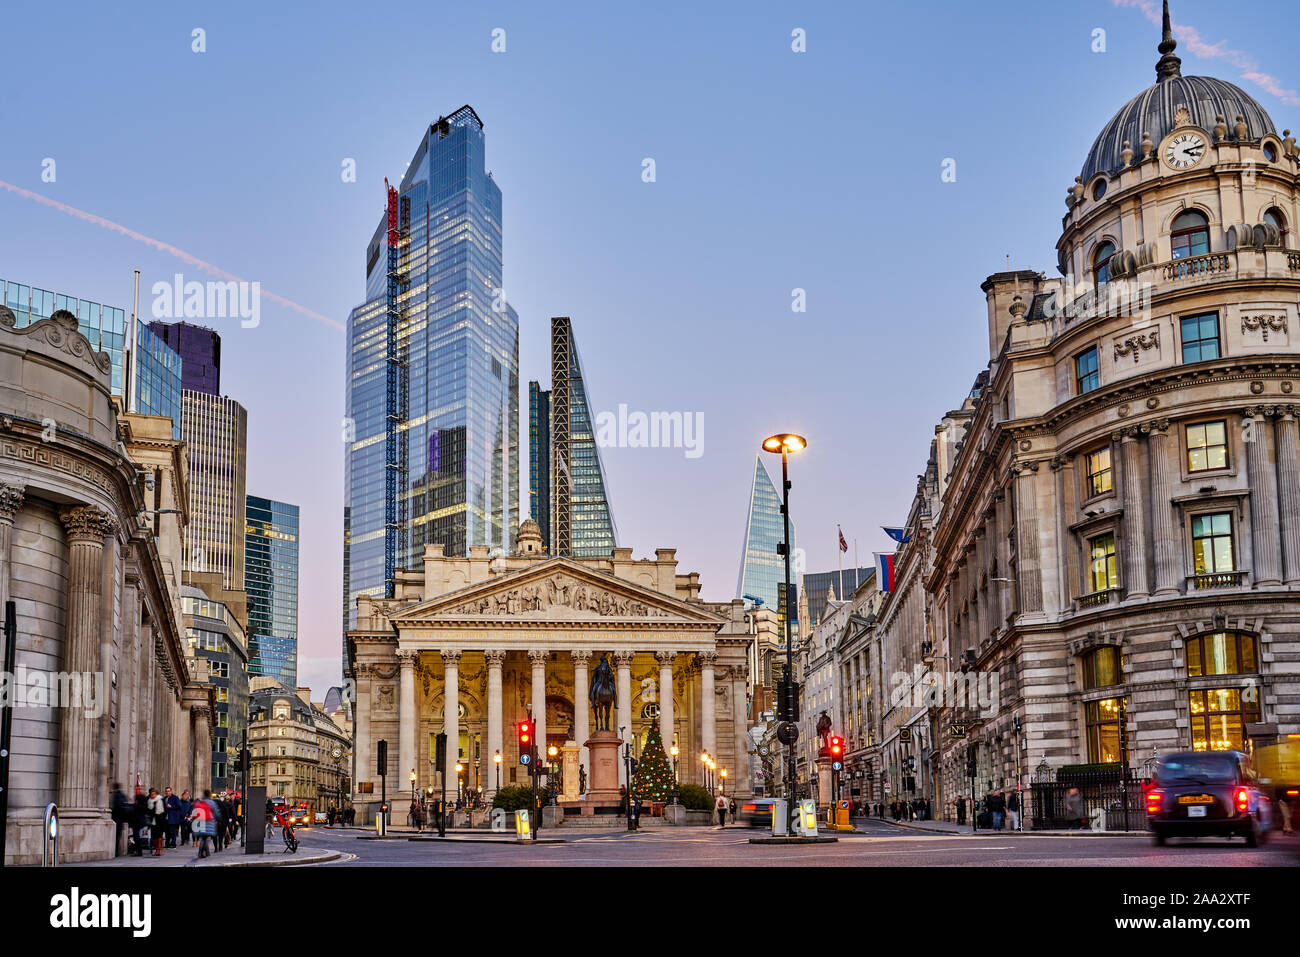 Il Royal Exchange, Banca di Inghilterra e grattacieli illuminati nella città di Londra. Inghilterra, Regno Unito Foto Stock